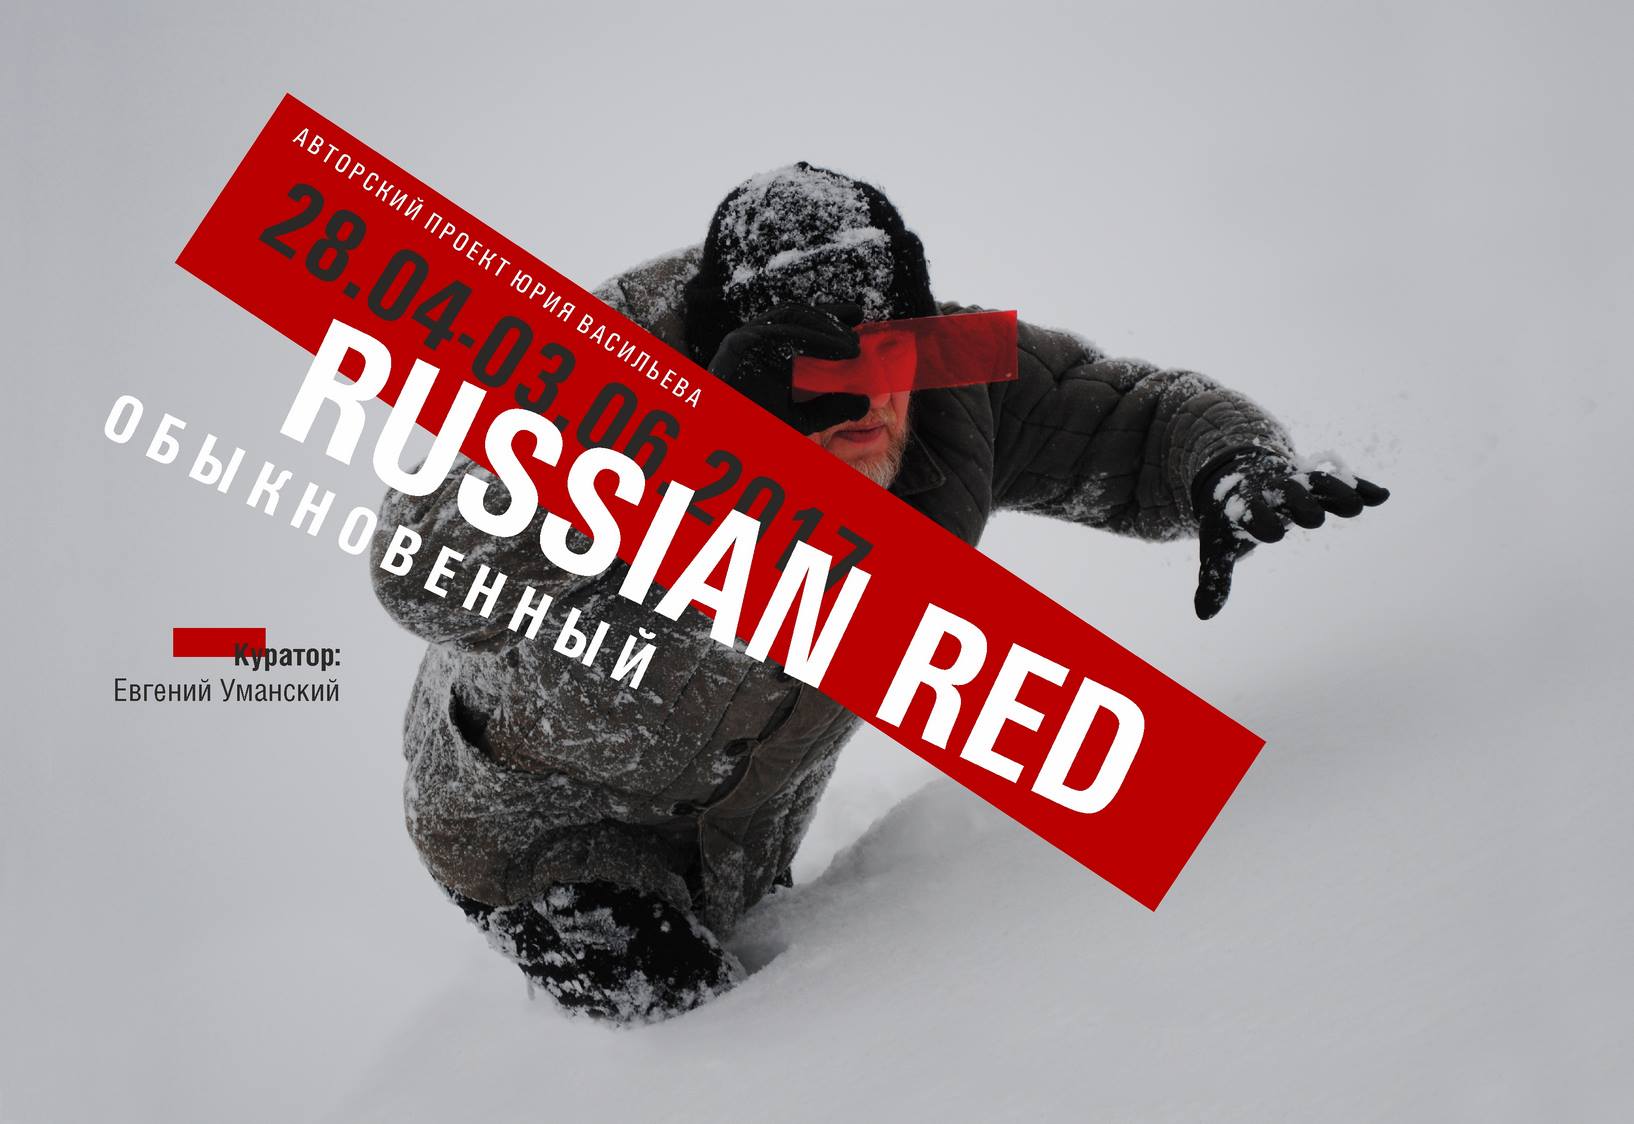 C 28 апреля по 3 июня: Russian Red Обыкновенный. Выставка Юрия Васильева